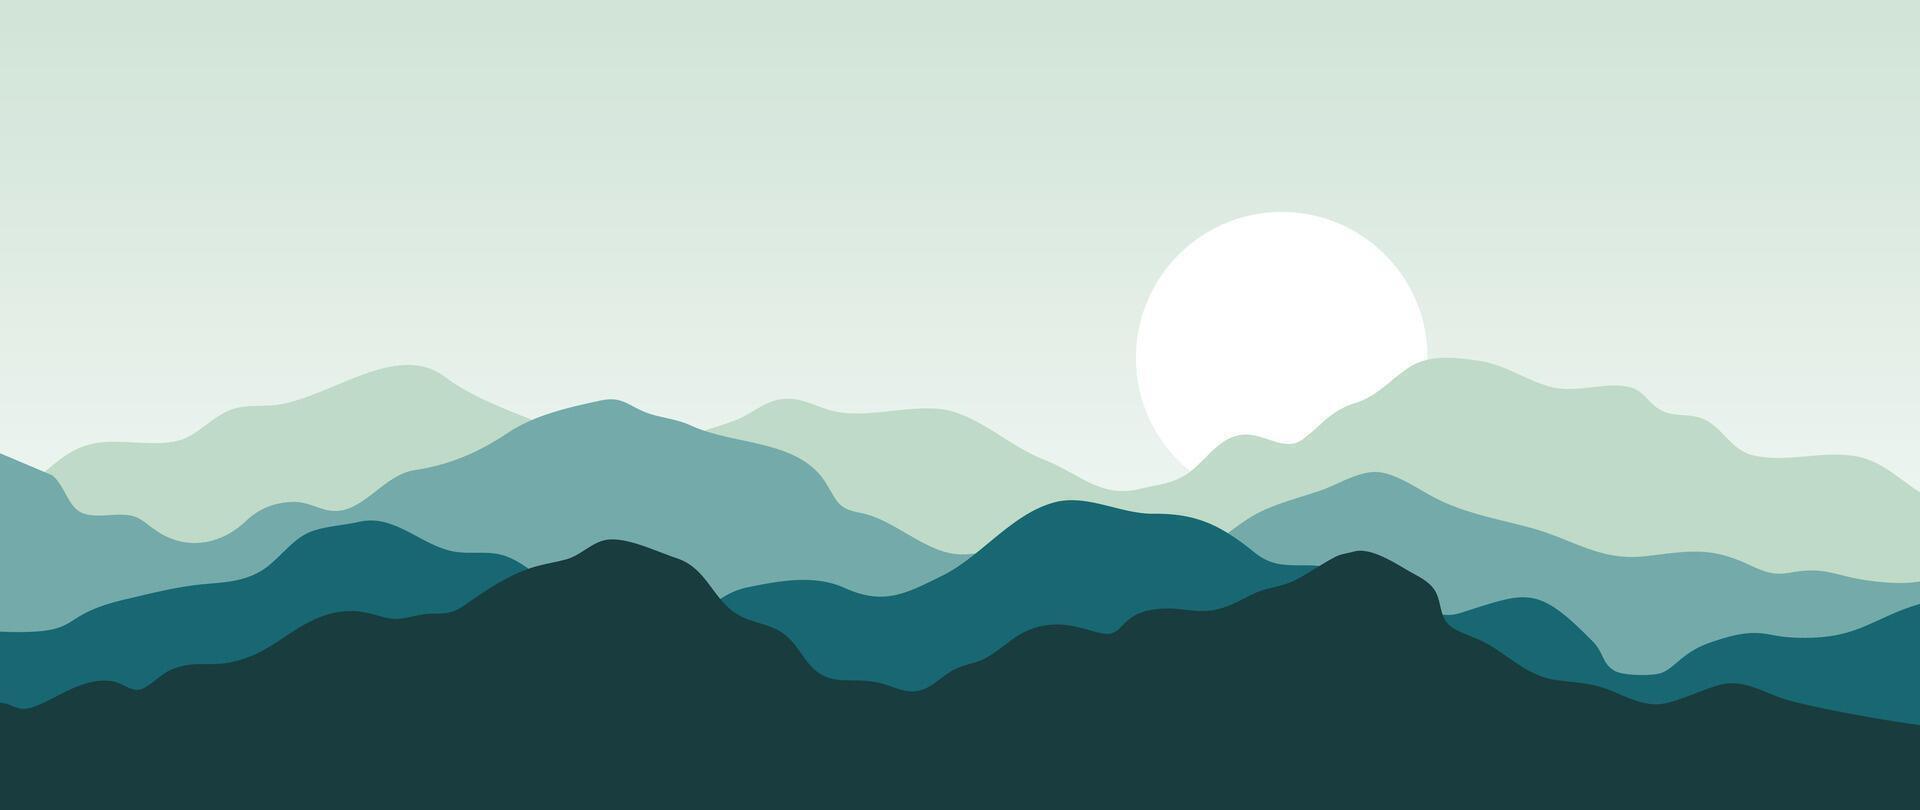 berg minimal bakgrund . abstrakt landskap kullar med grön Färg, Sol, måne. natur se illustration design för Hem dekor, tapet, grafik, baner, interiör dekor. vektor